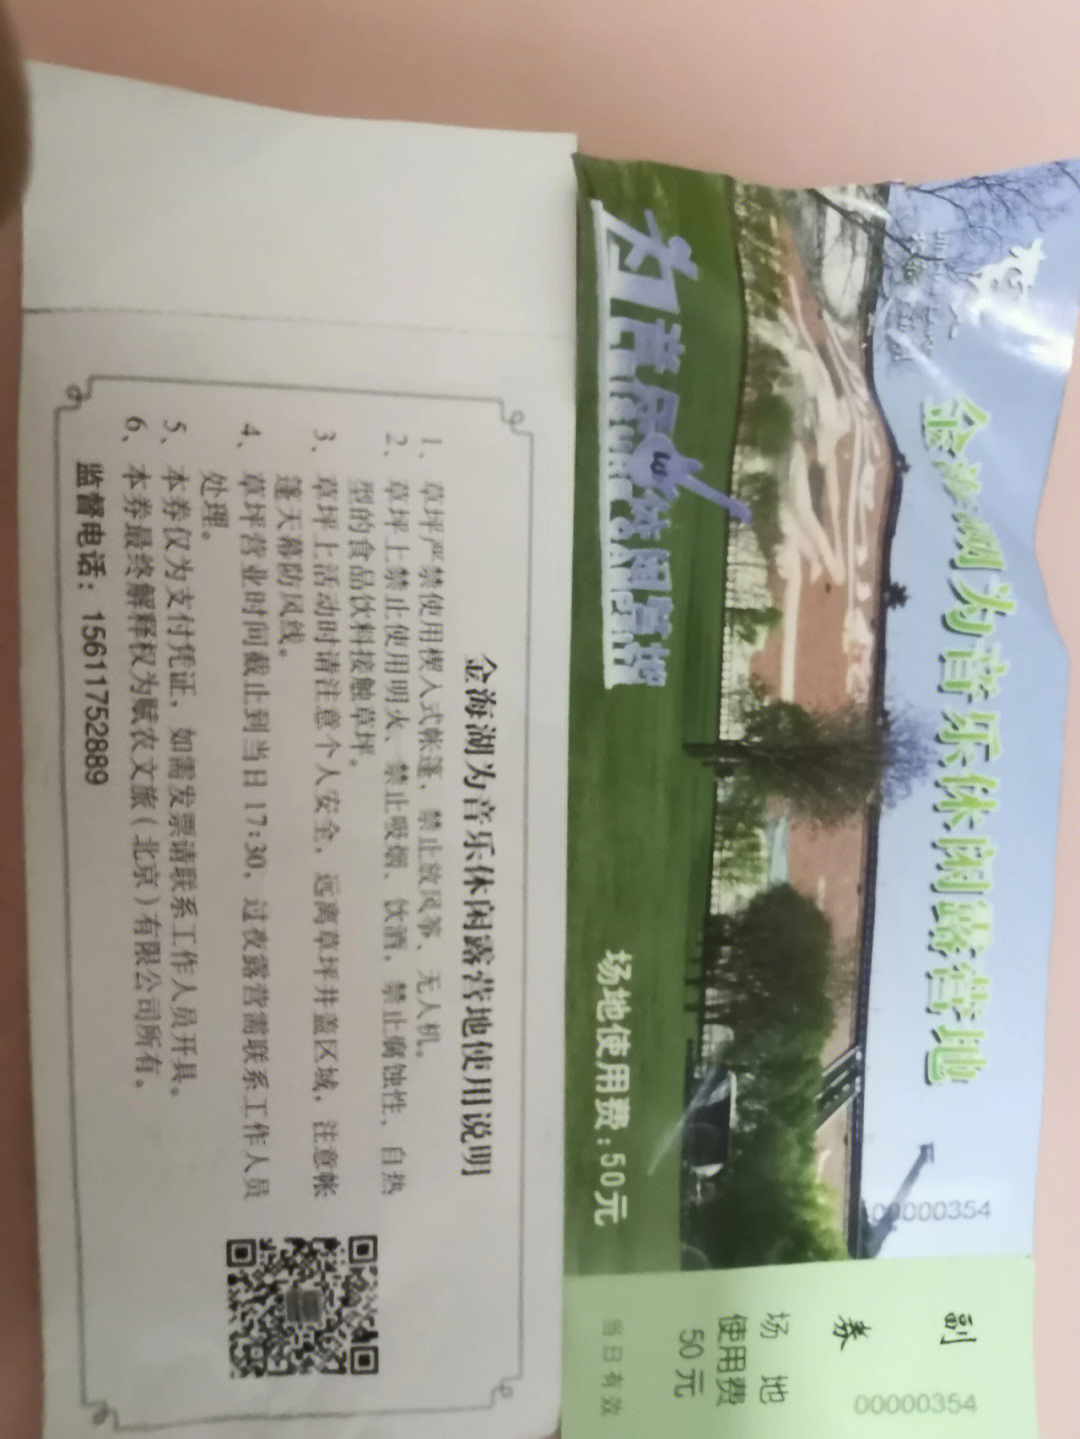 金海湖风景区门票图片